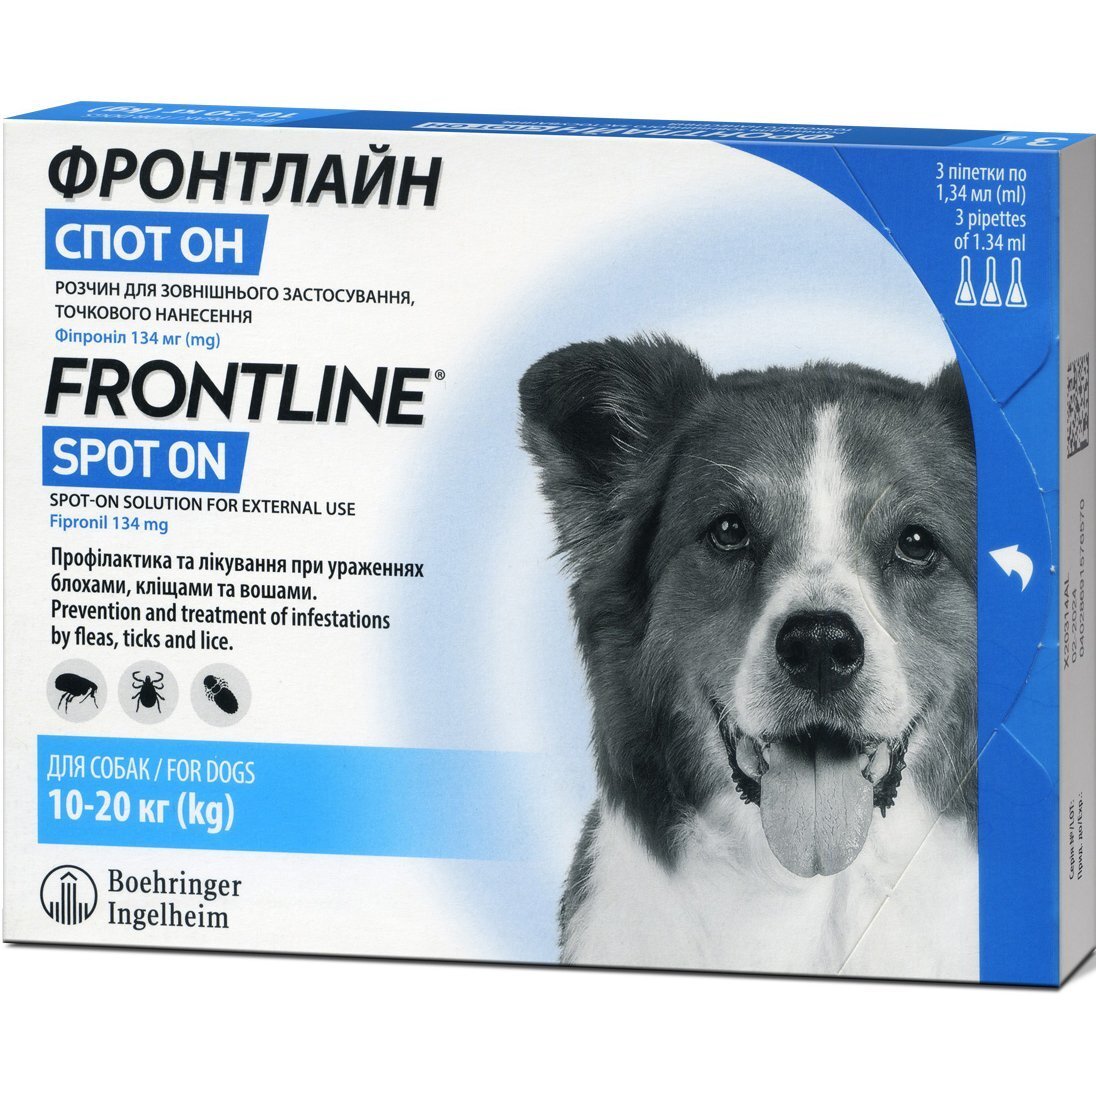 Капли Boehringer Ingelheim Frontline (Фронтлайн) Spot-on Dog M от блох и клещей для собак весом 10-20 кг 3 шт фото 